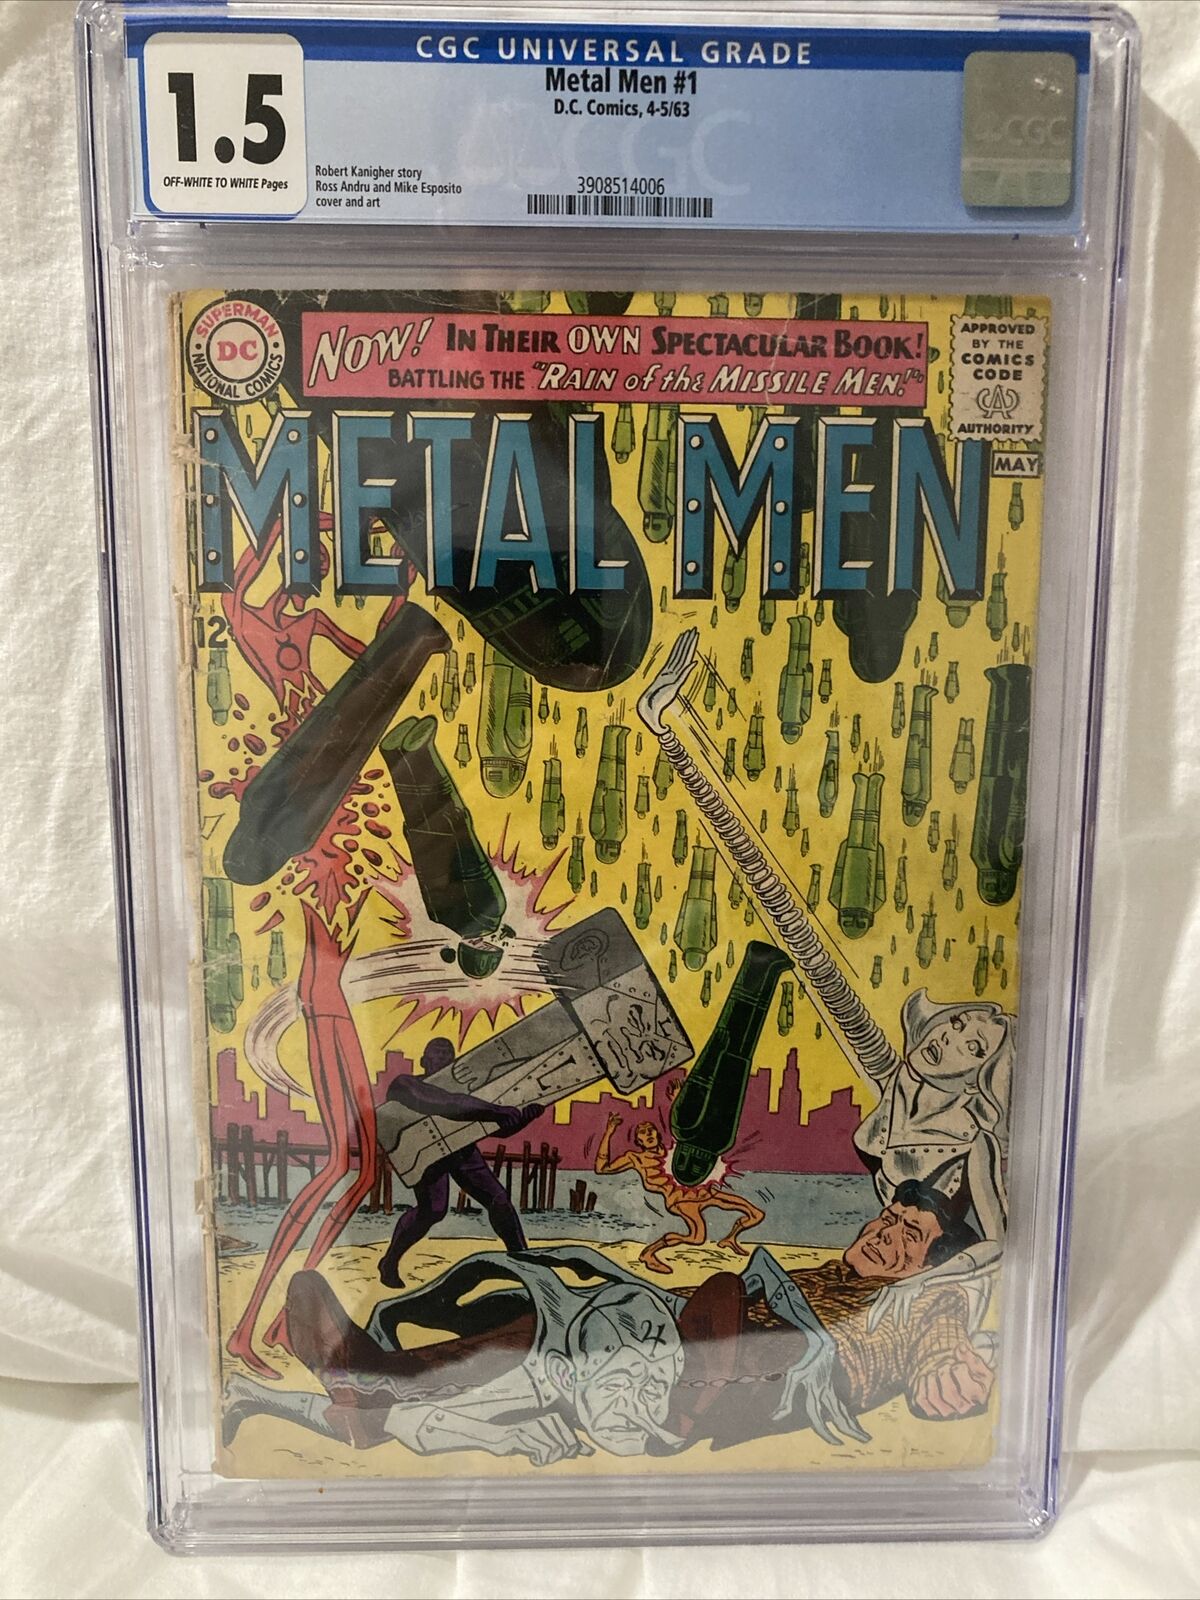 Metal Men #1 (April-May 1963, DC Comics) Rare, CGC Graded (1.5)